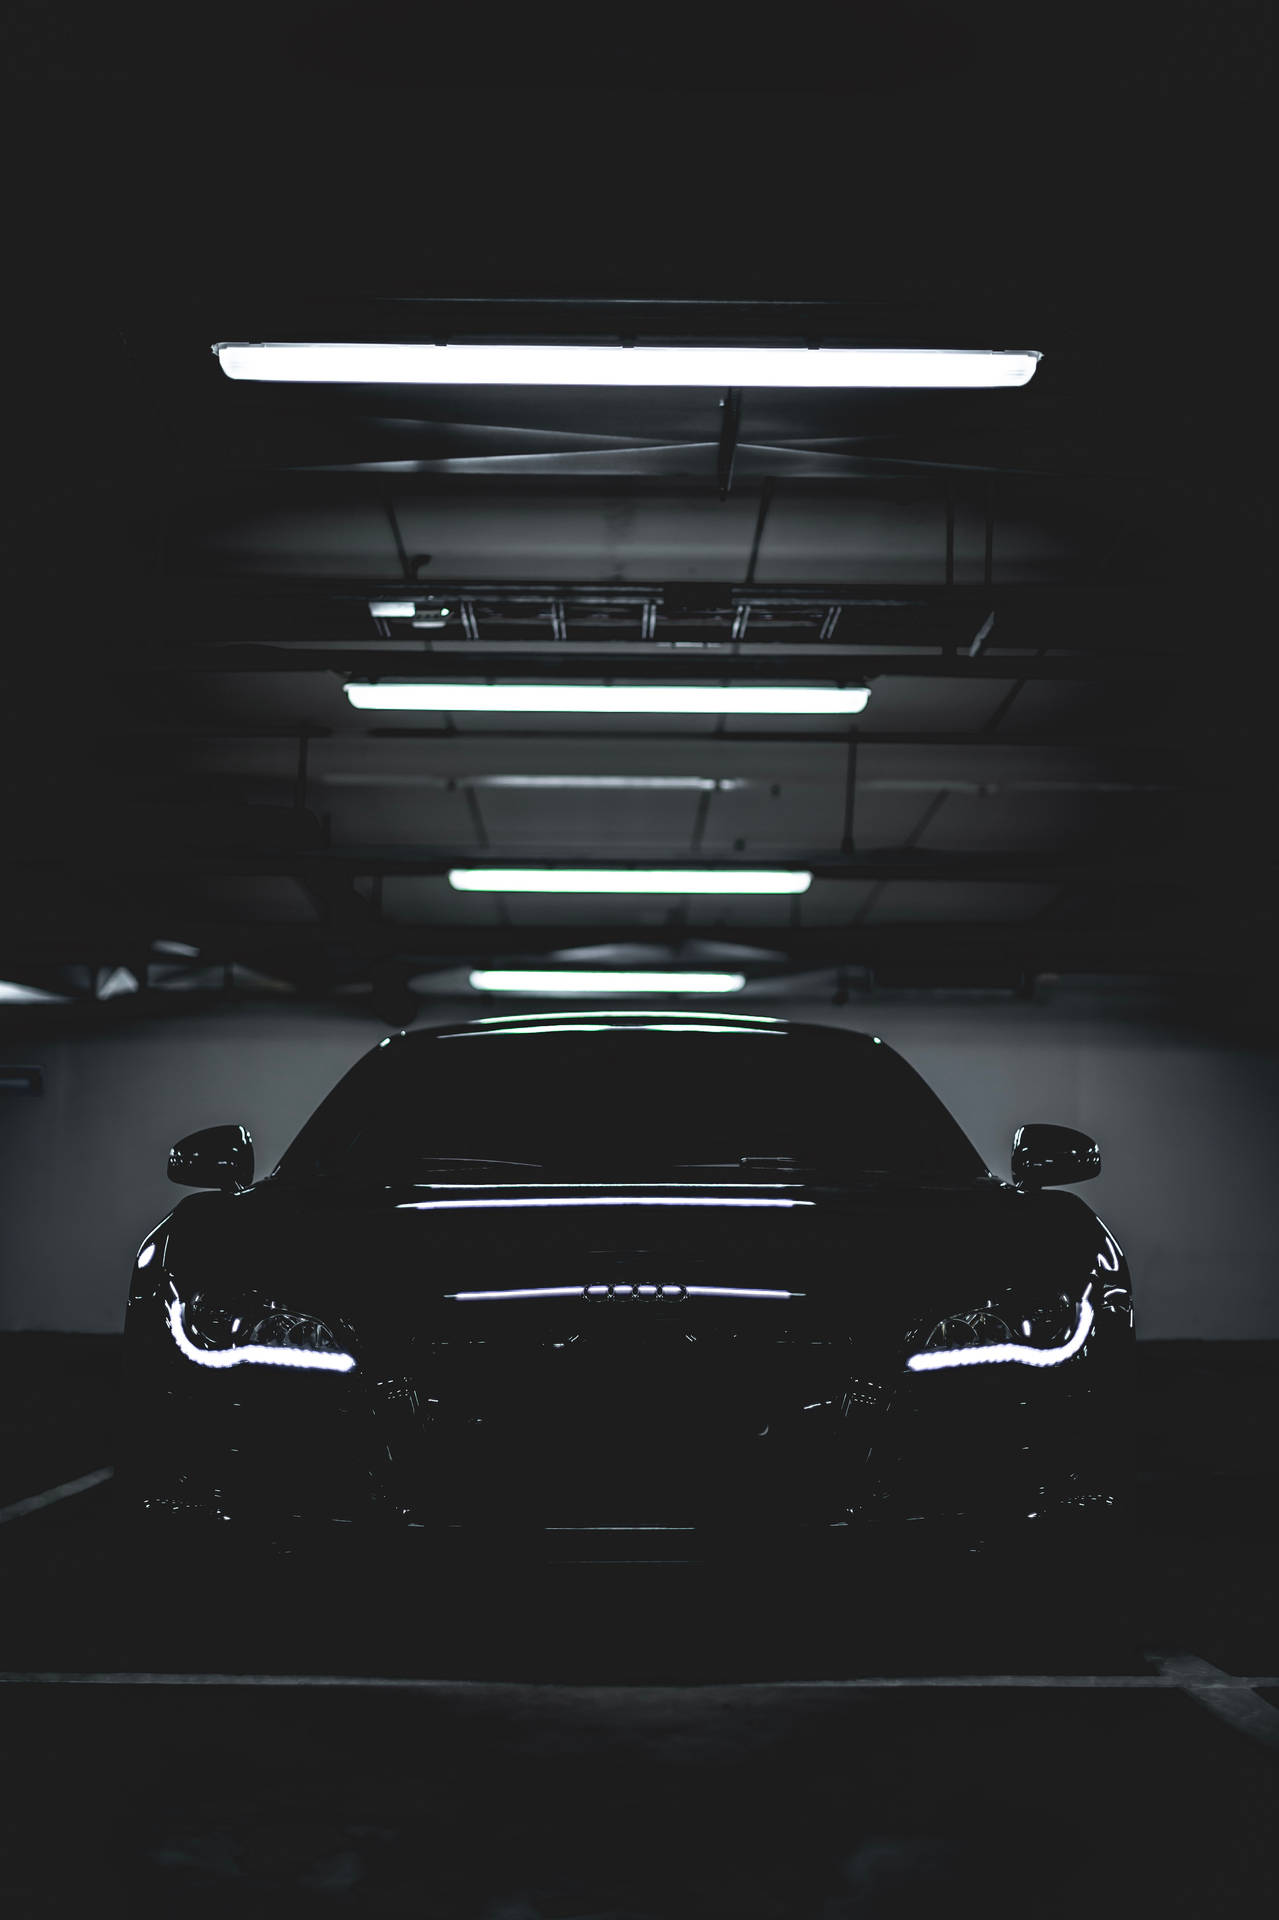 A Black Car In A Dark Parking Garage Background